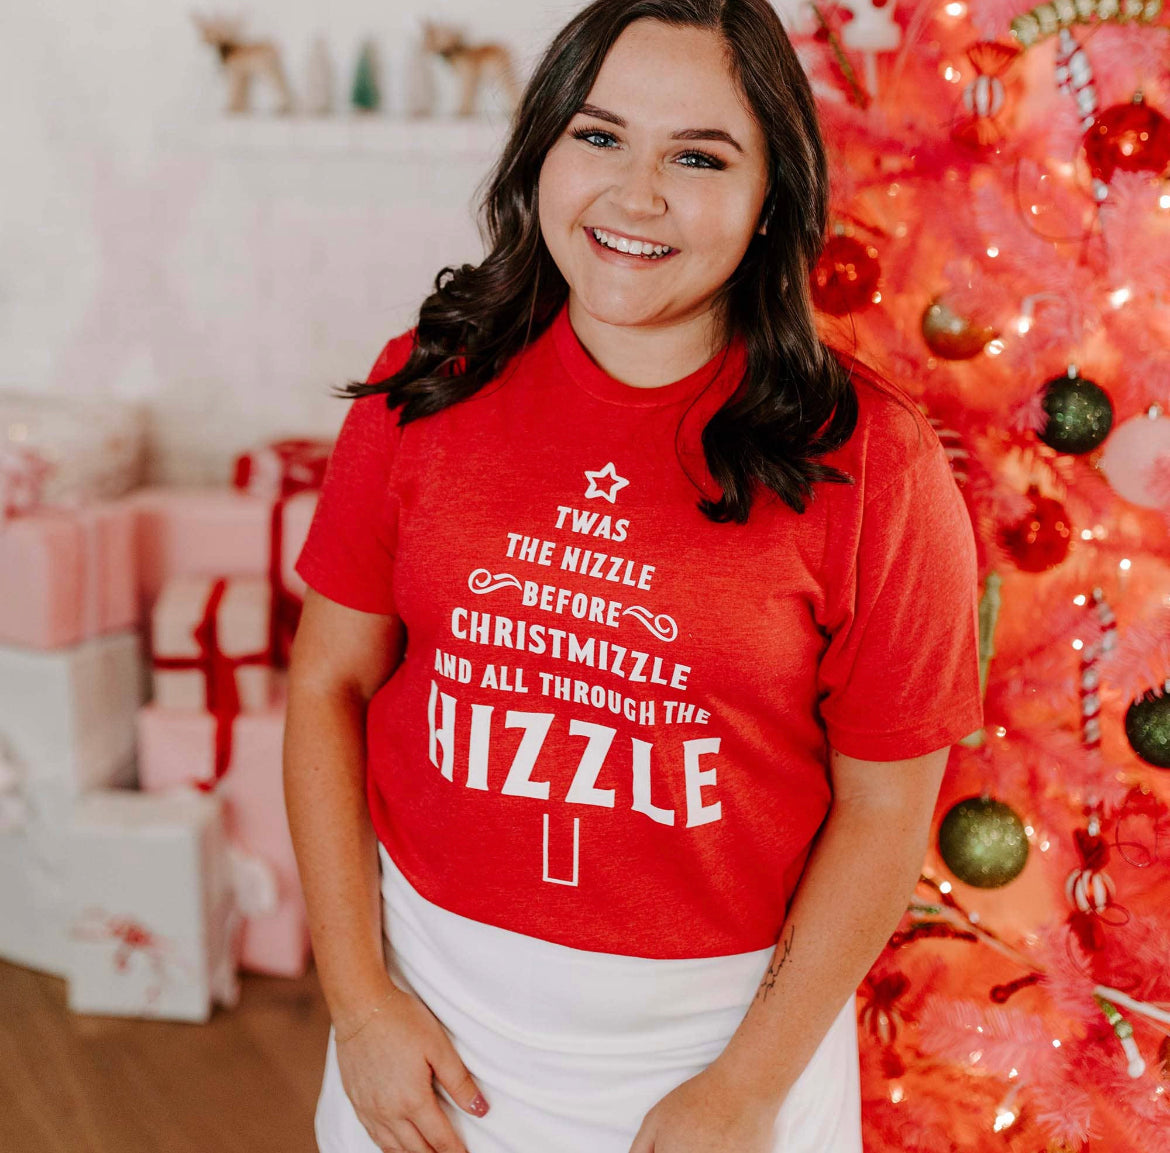 Twas the Nizzle Before Christmizzle - Women’s T-Shirt